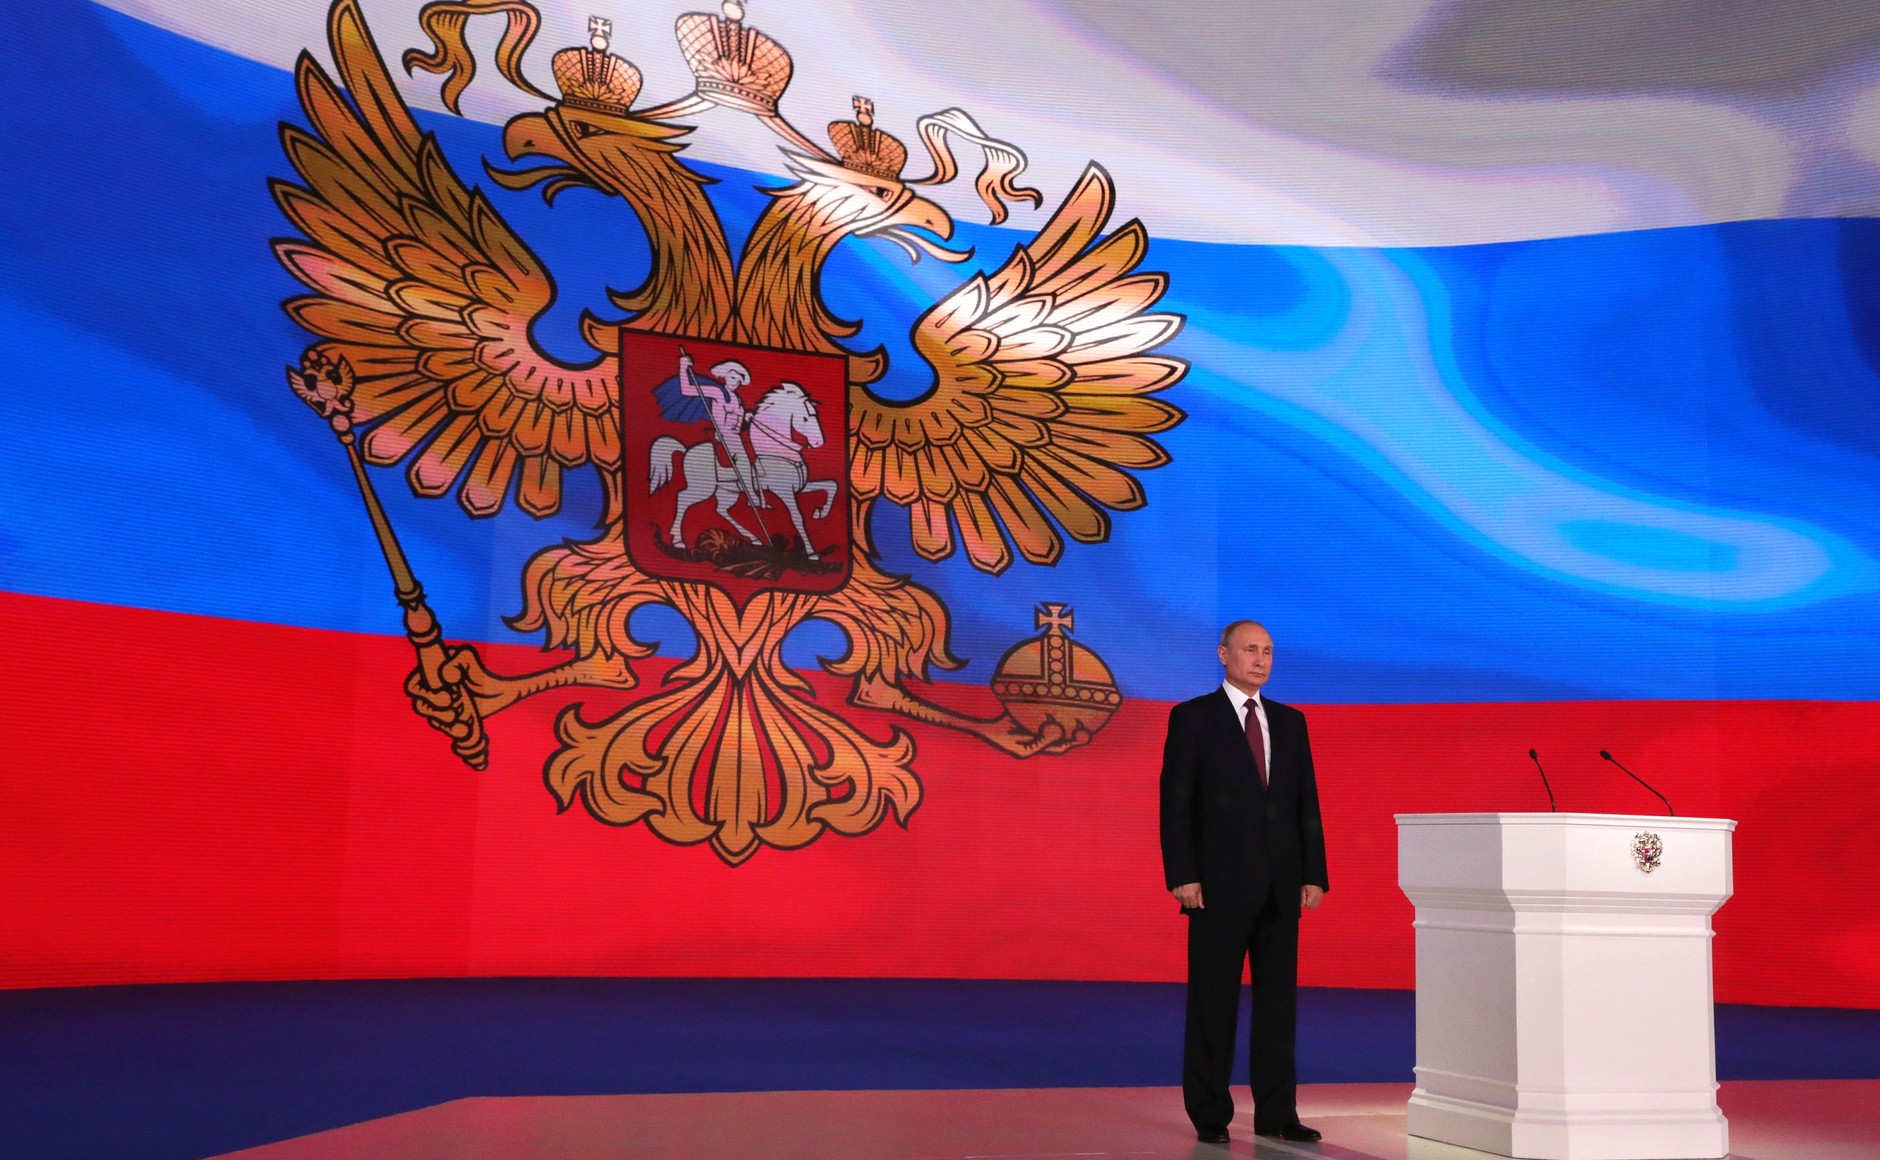 La soberanía nacional y las relaciones con Rusia Por Roman Nosikov | Agencia Federal de Noticias (RIA FAN), Rusia